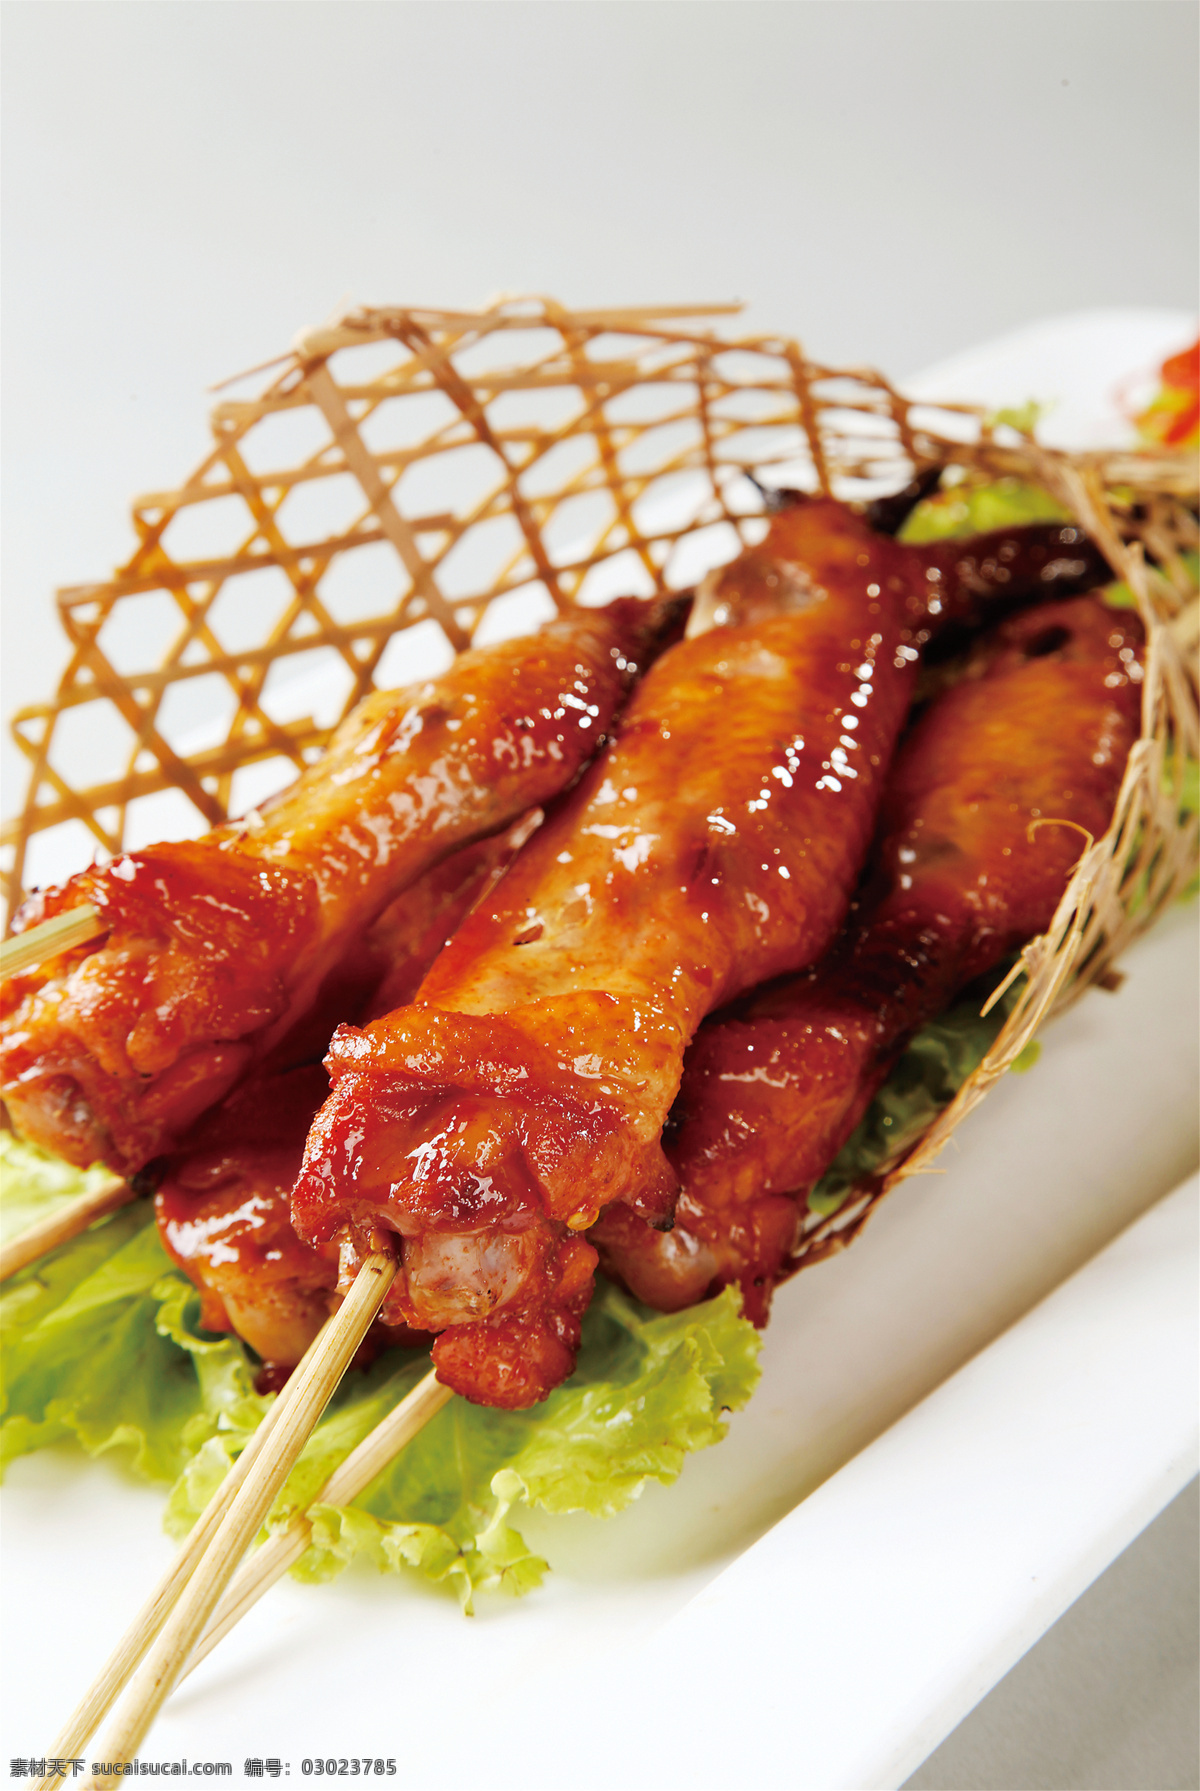 泰国 烤 鸡翅 泰国烤鸡翅 美食 传统美食 餐饮美食 高清菜谱用图